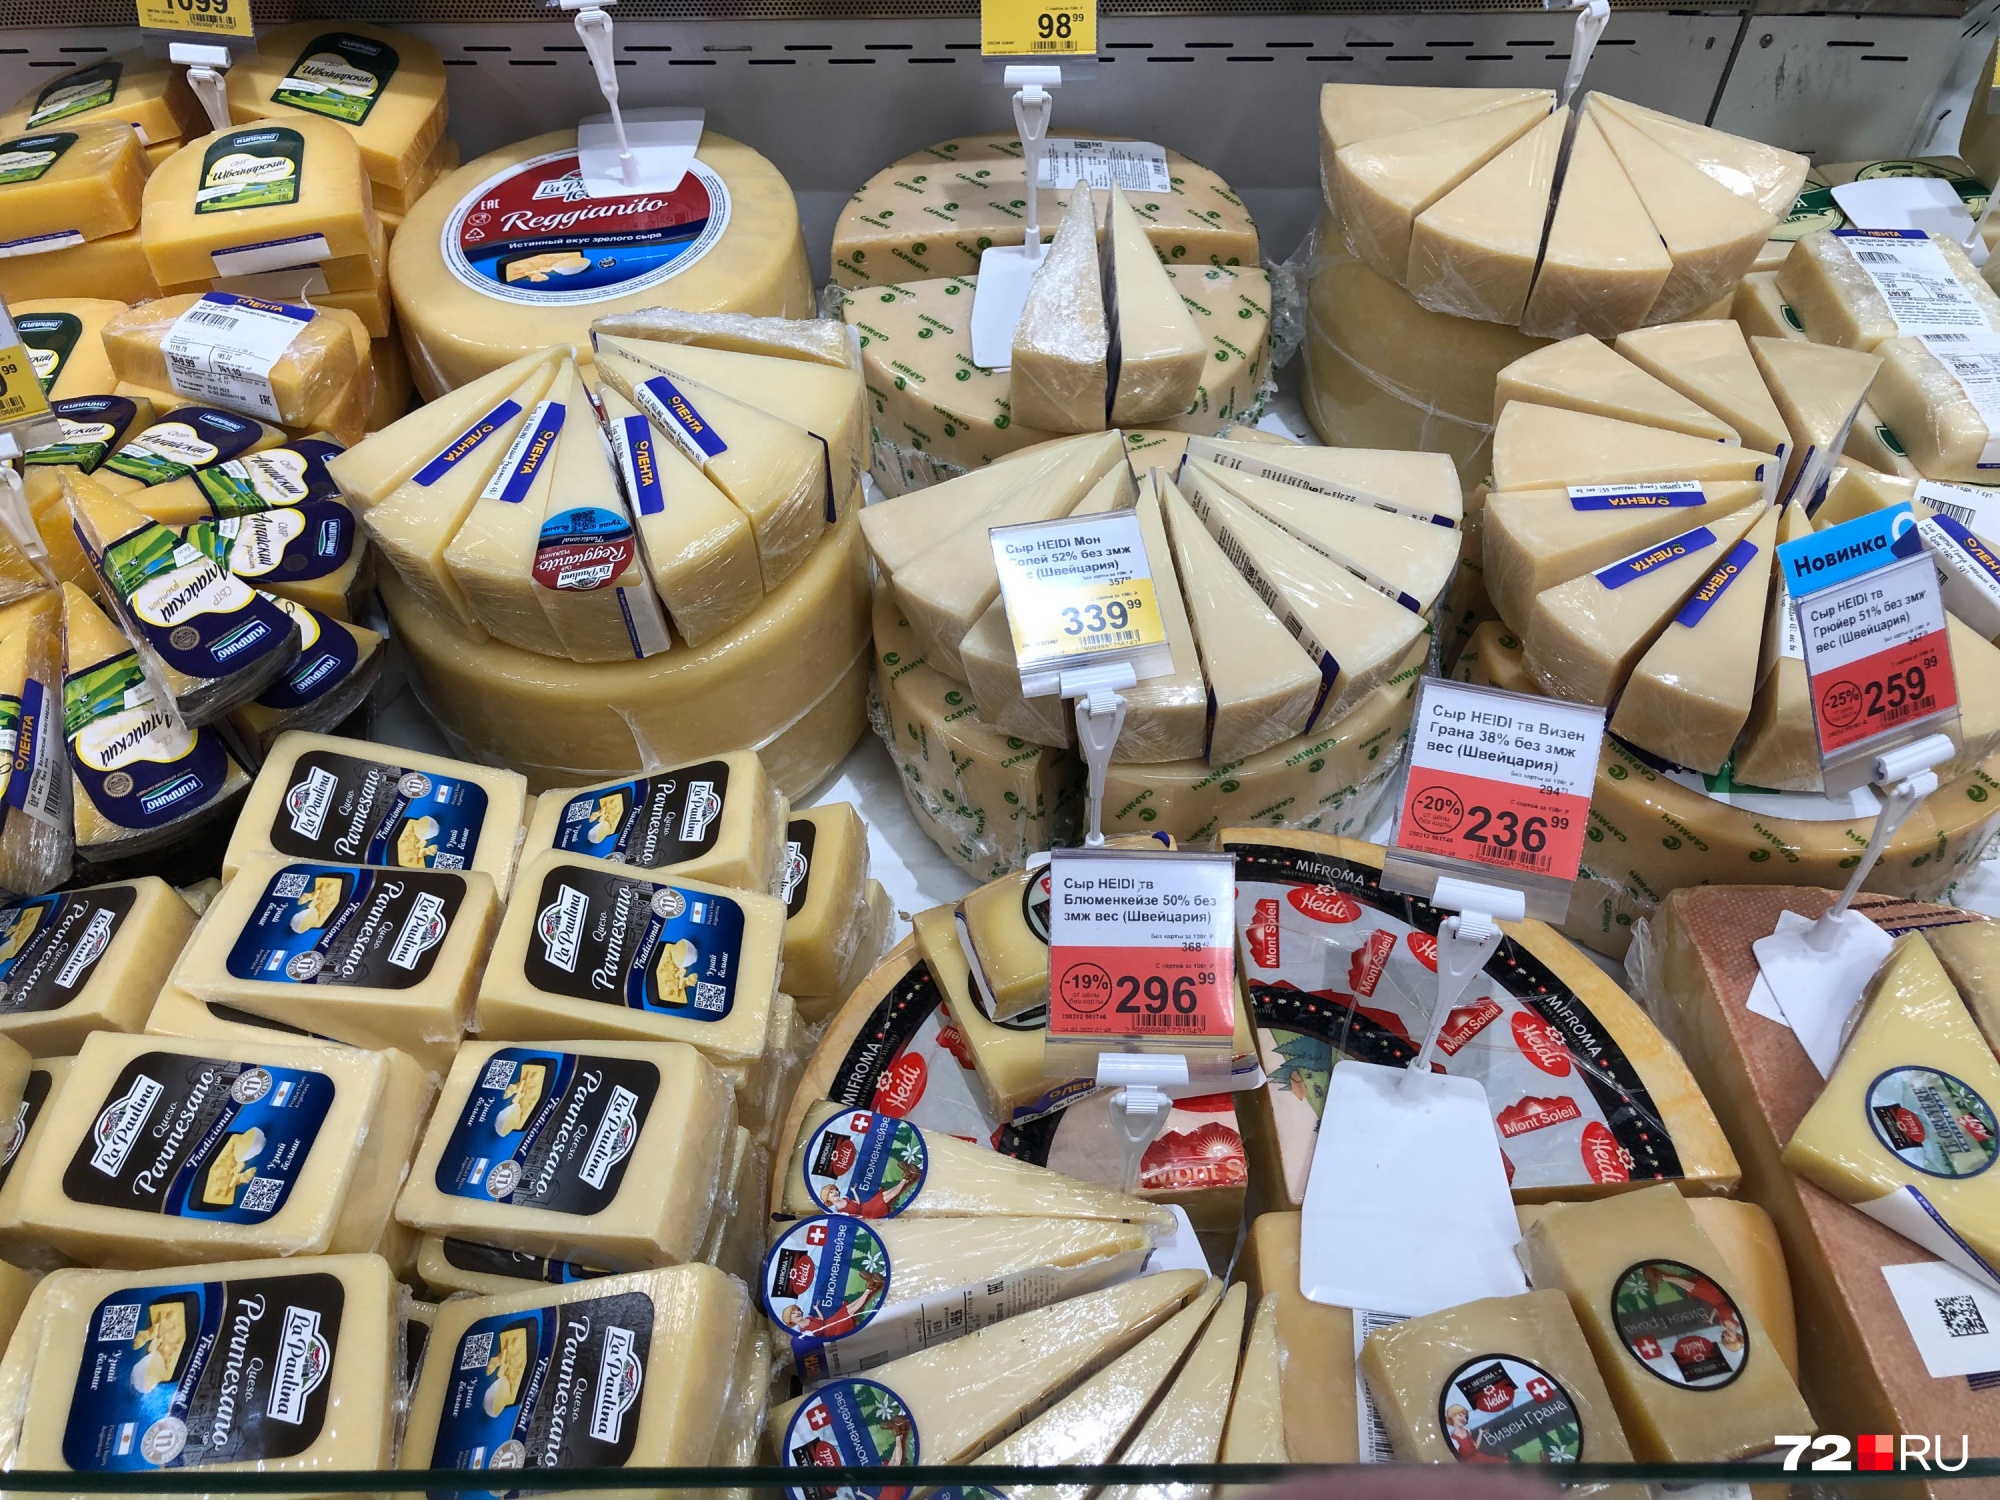 Одной из самых дорогих сырных позиций в «Ленте» можно считать швейцарский сыр — его продают по 3390 рублей и 99 копеек за килограмм